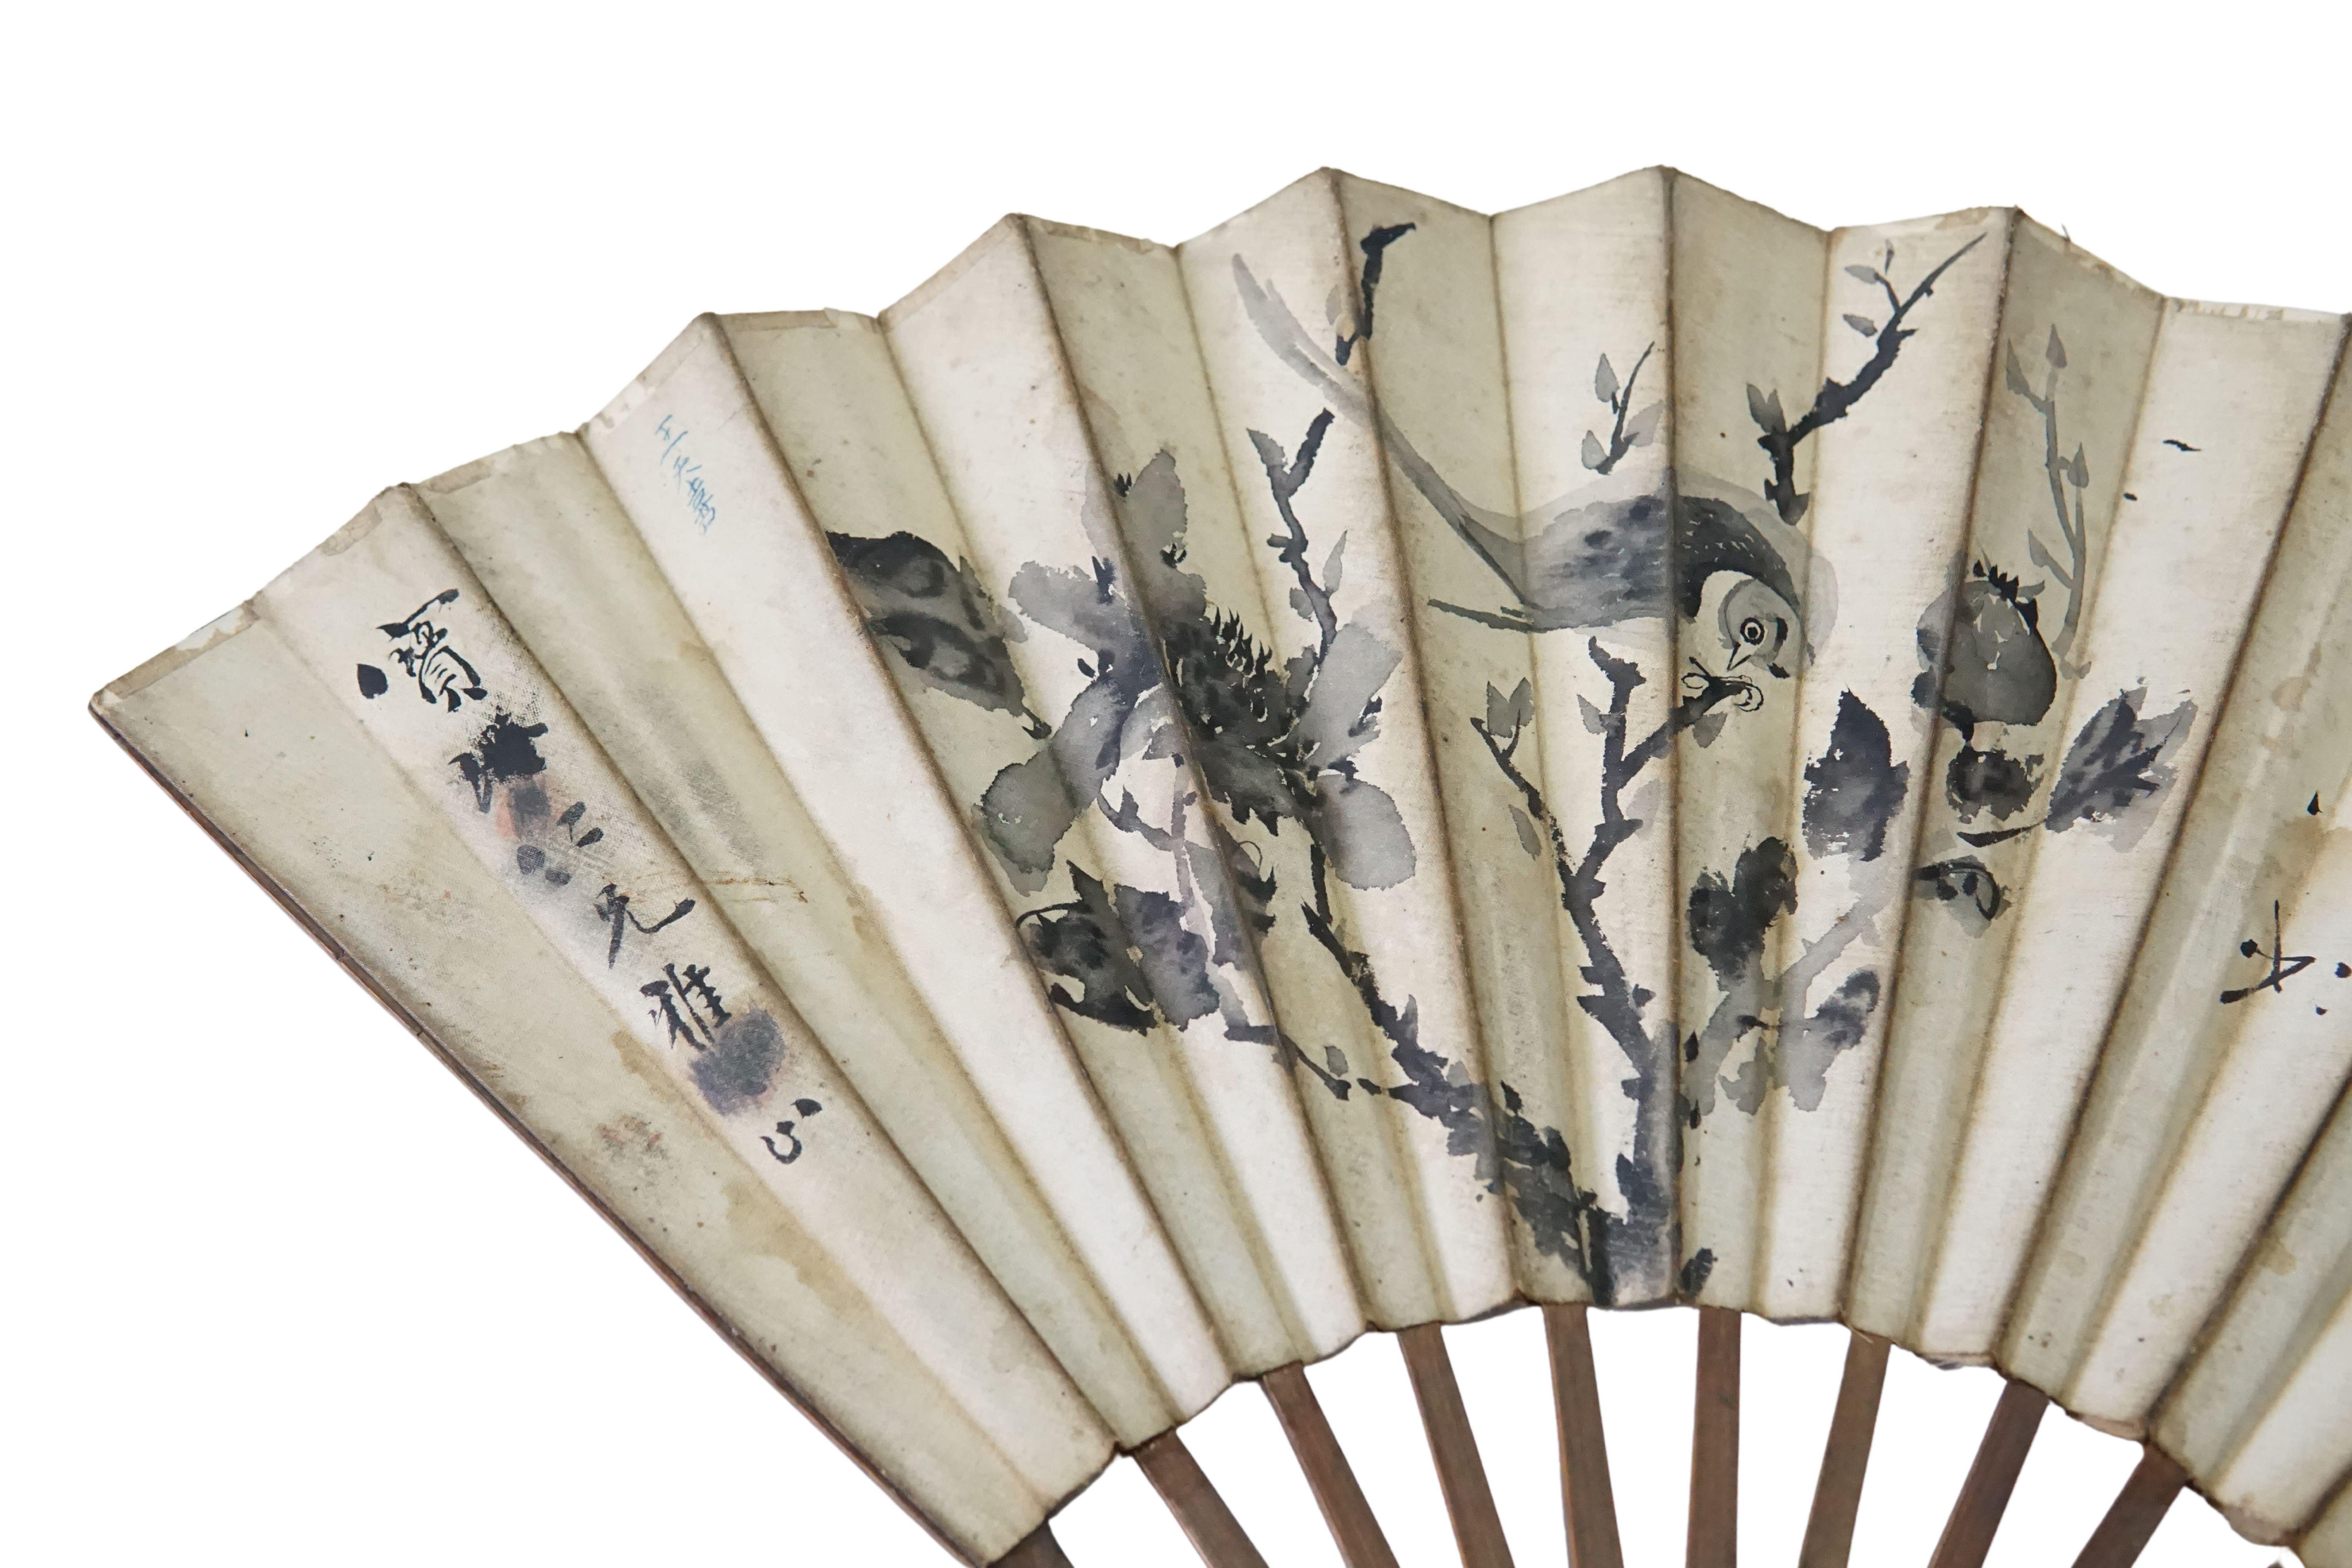 Ein chinesischer handgemalter Fächer mit handgemalter Kalligraphie (mit zwei verschiedenen Zeichnungen auf beiden Seiten). Der Rahmen des Fächers ist aus Bambus gefertigt und mit einer Holzgravur versehen. Die Kalligraphie zeigt Vögel und